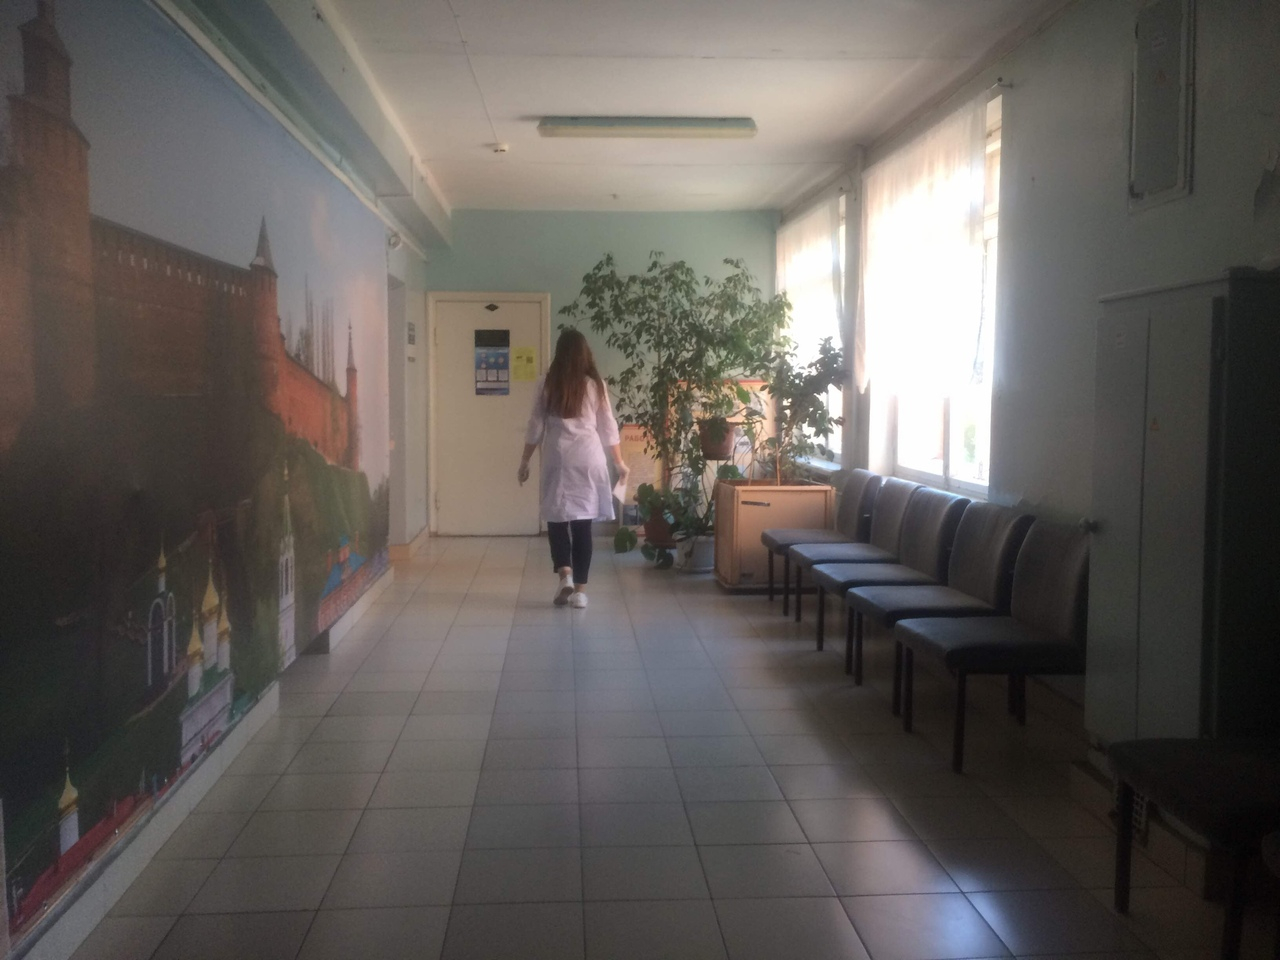 Карантин по коронавирусу ввели в восьми лечебных учреждениях Нижегородской области